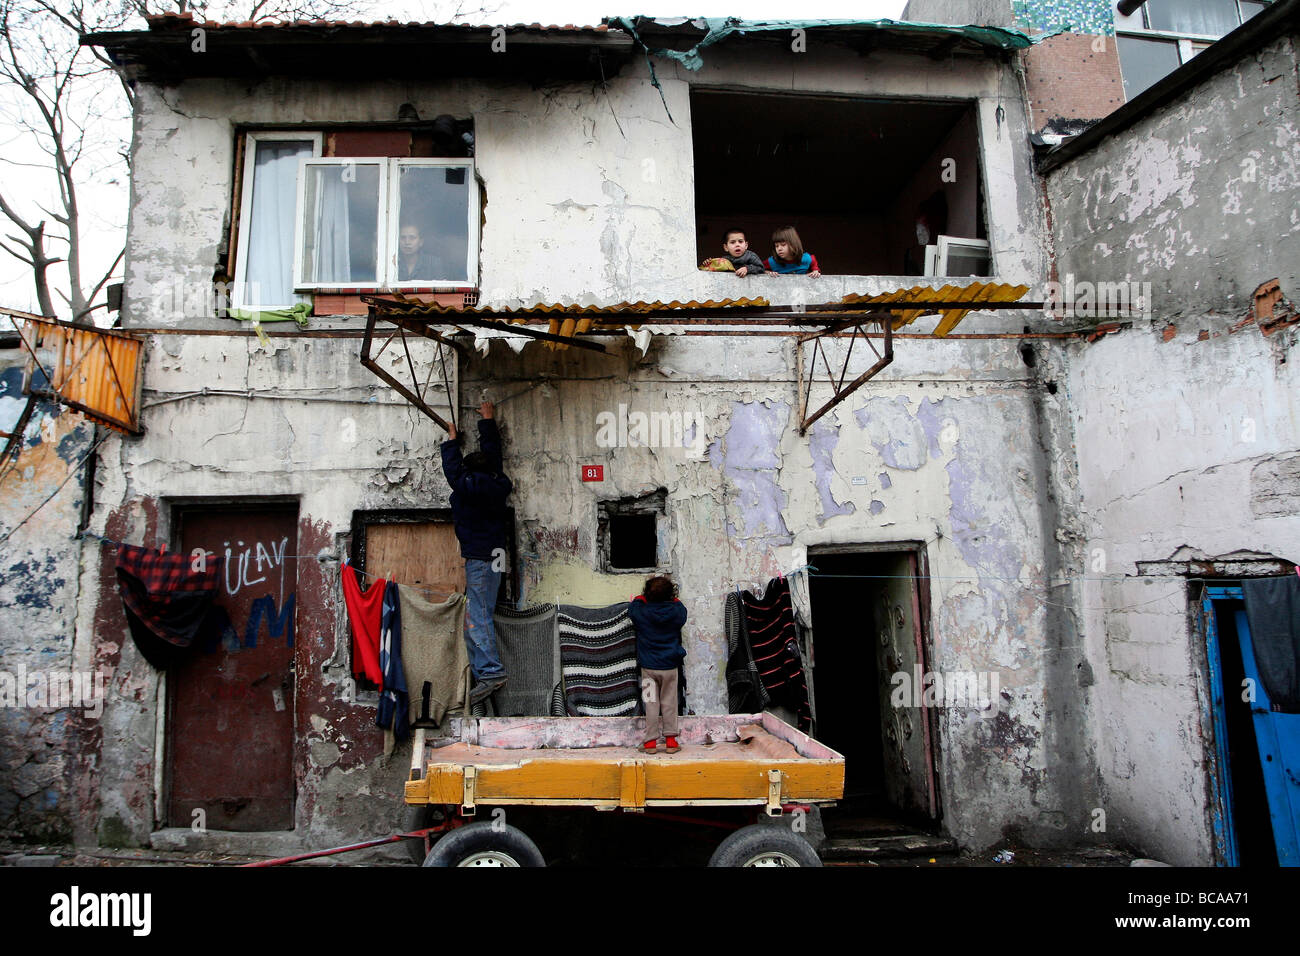 La scène de Sulukule, où les gitans vivent à Istanbul Turquie Banque D'Images